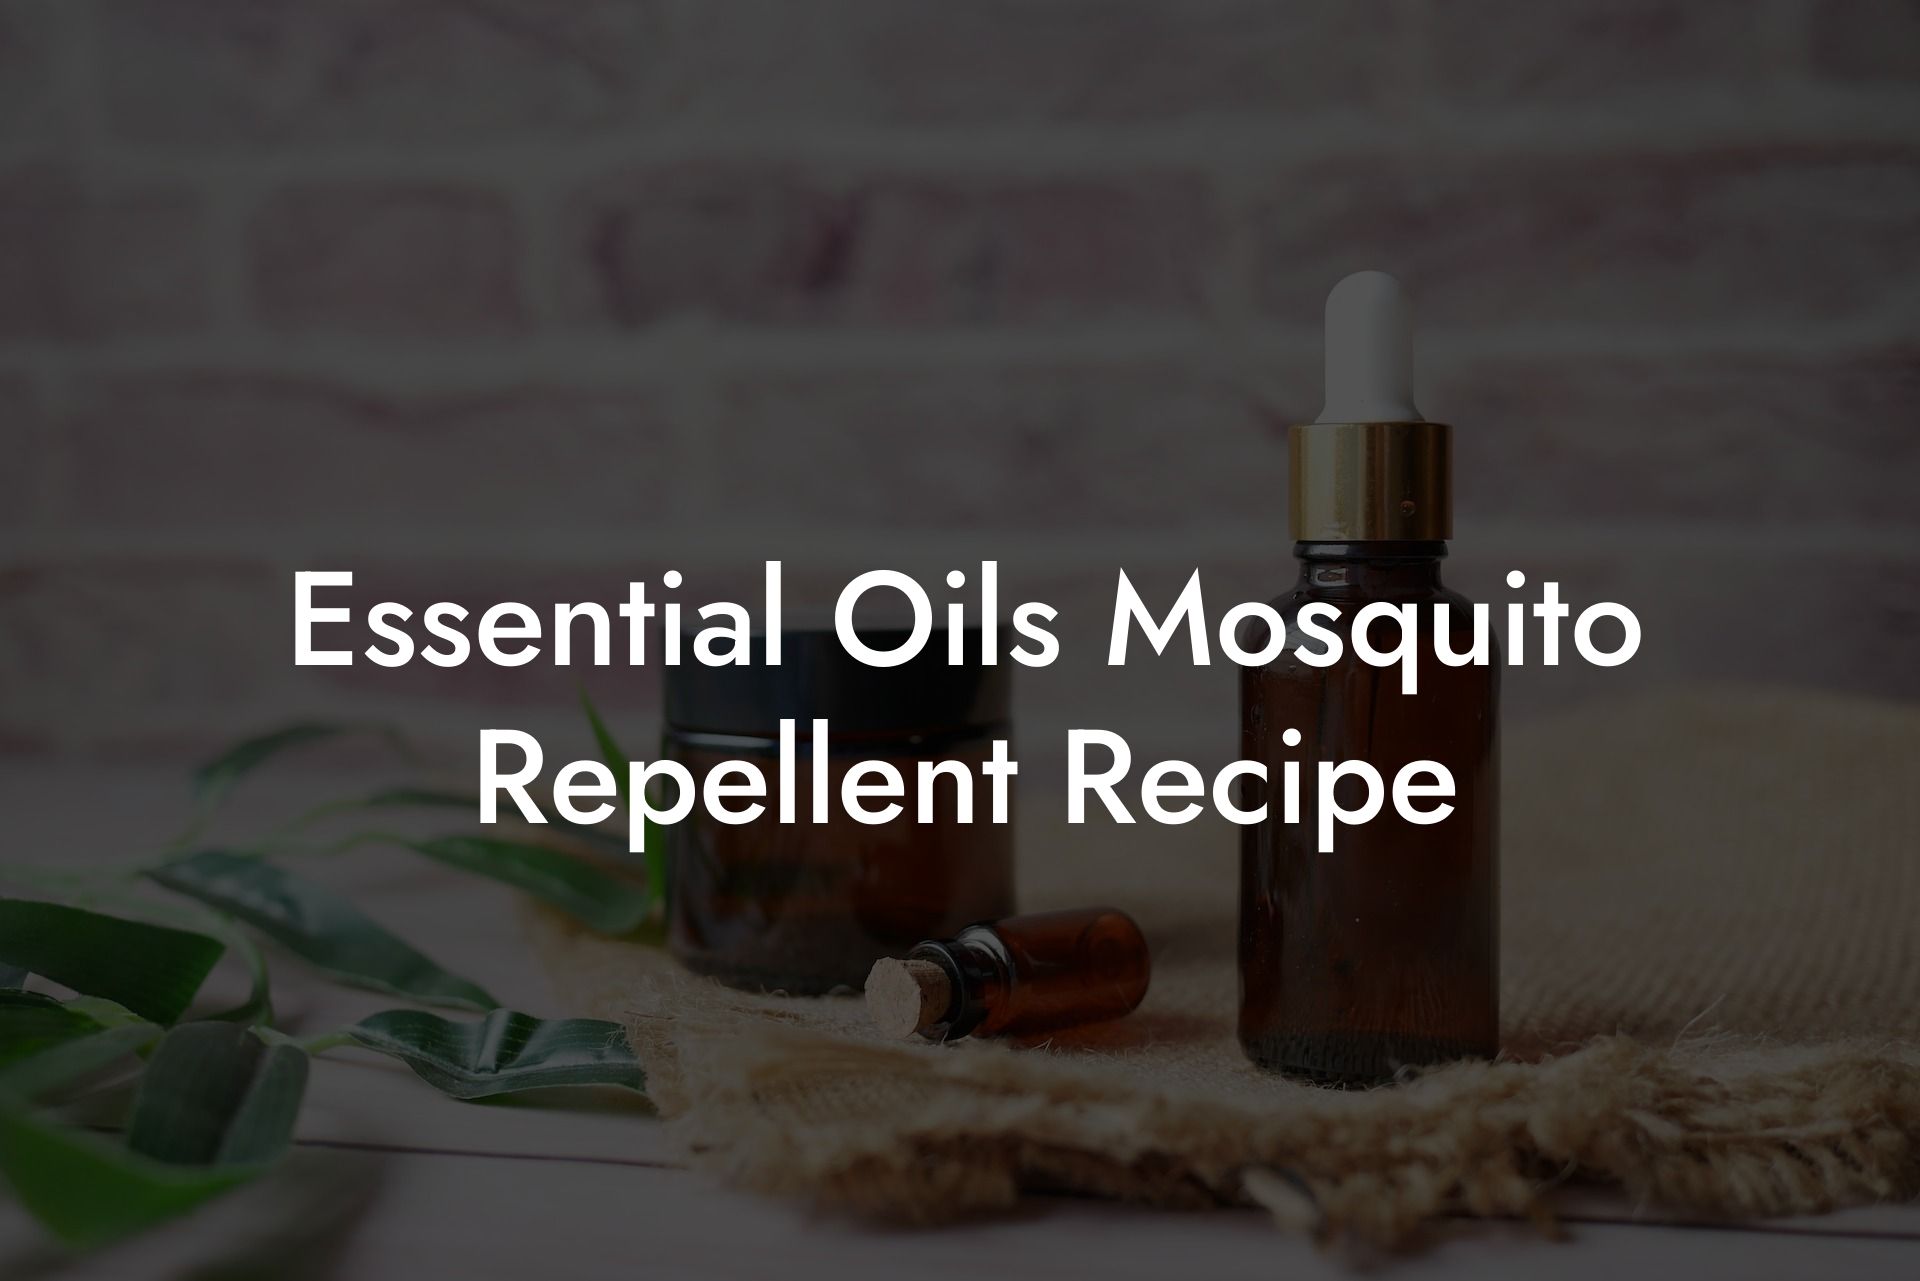 Essential Oils Mosquito Repellent Recipe